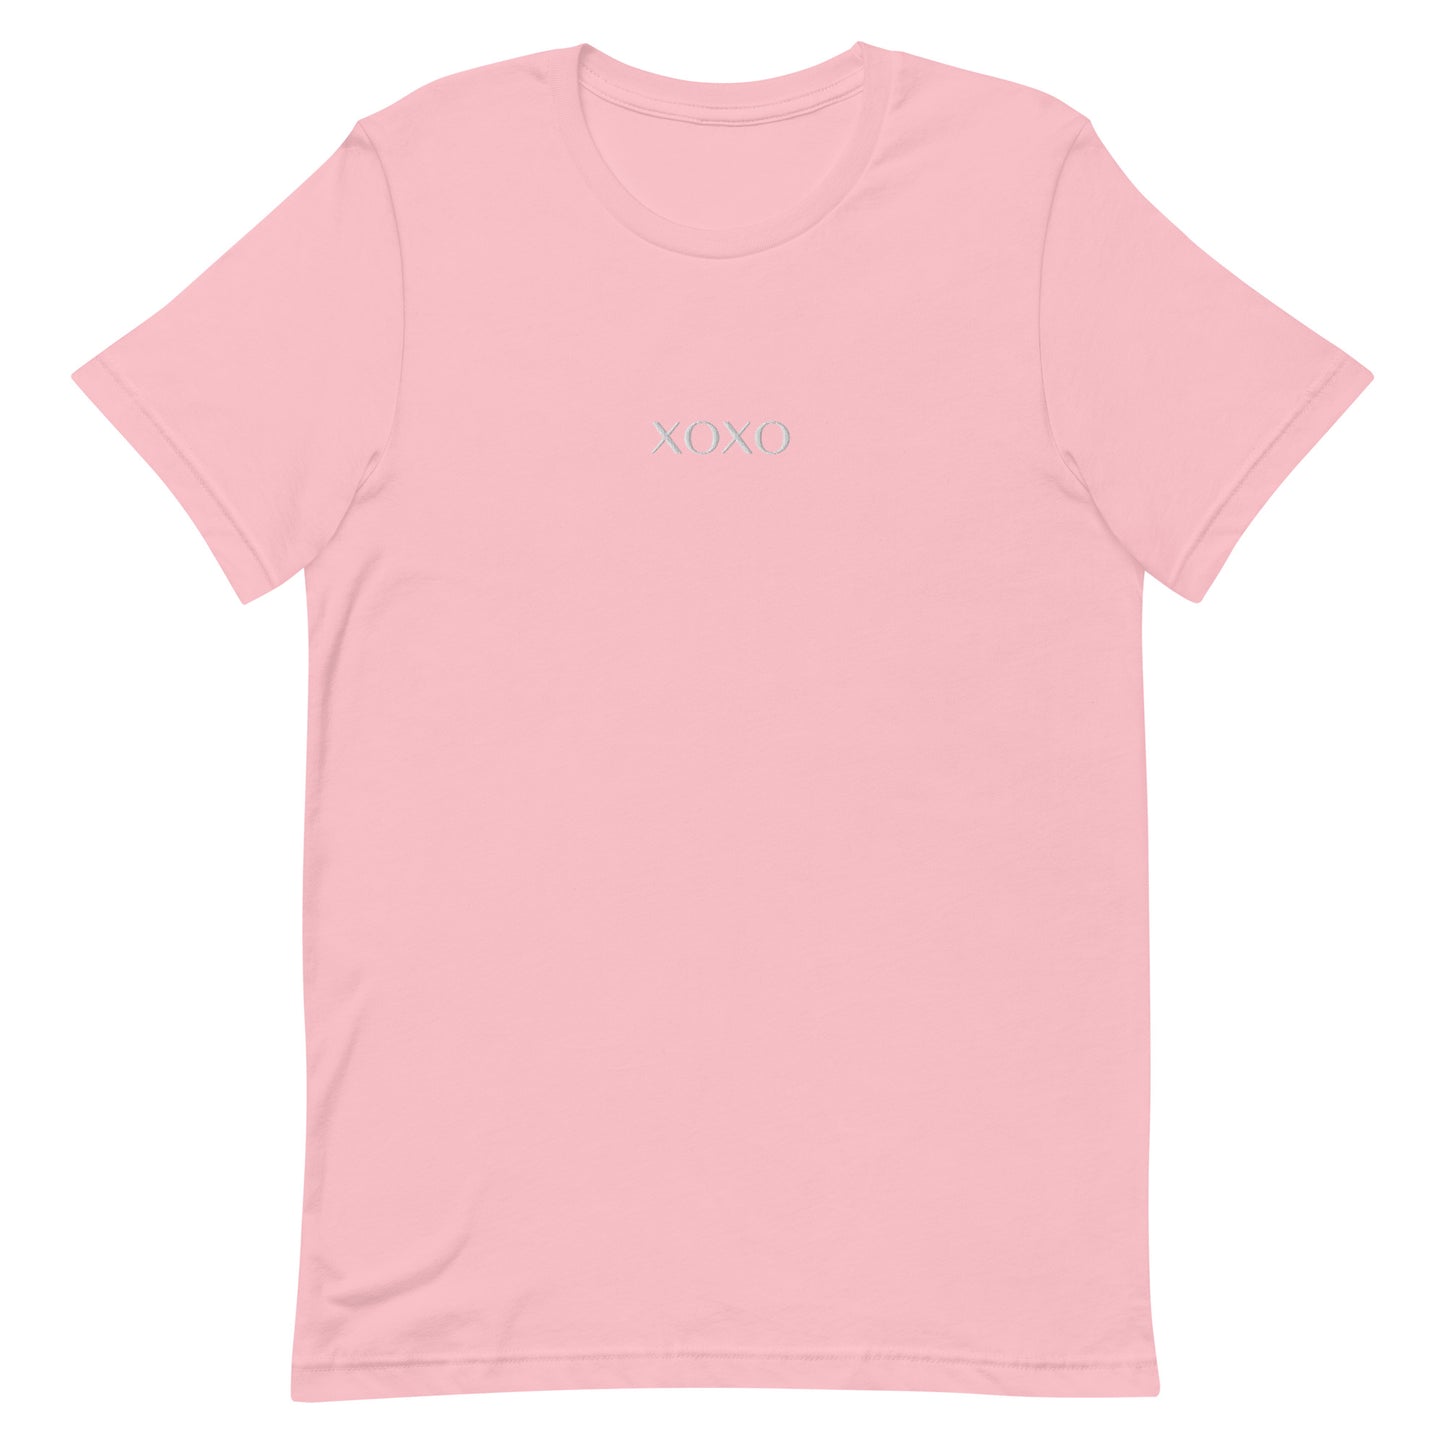 XOXO Embroidered Unisex t-shirt